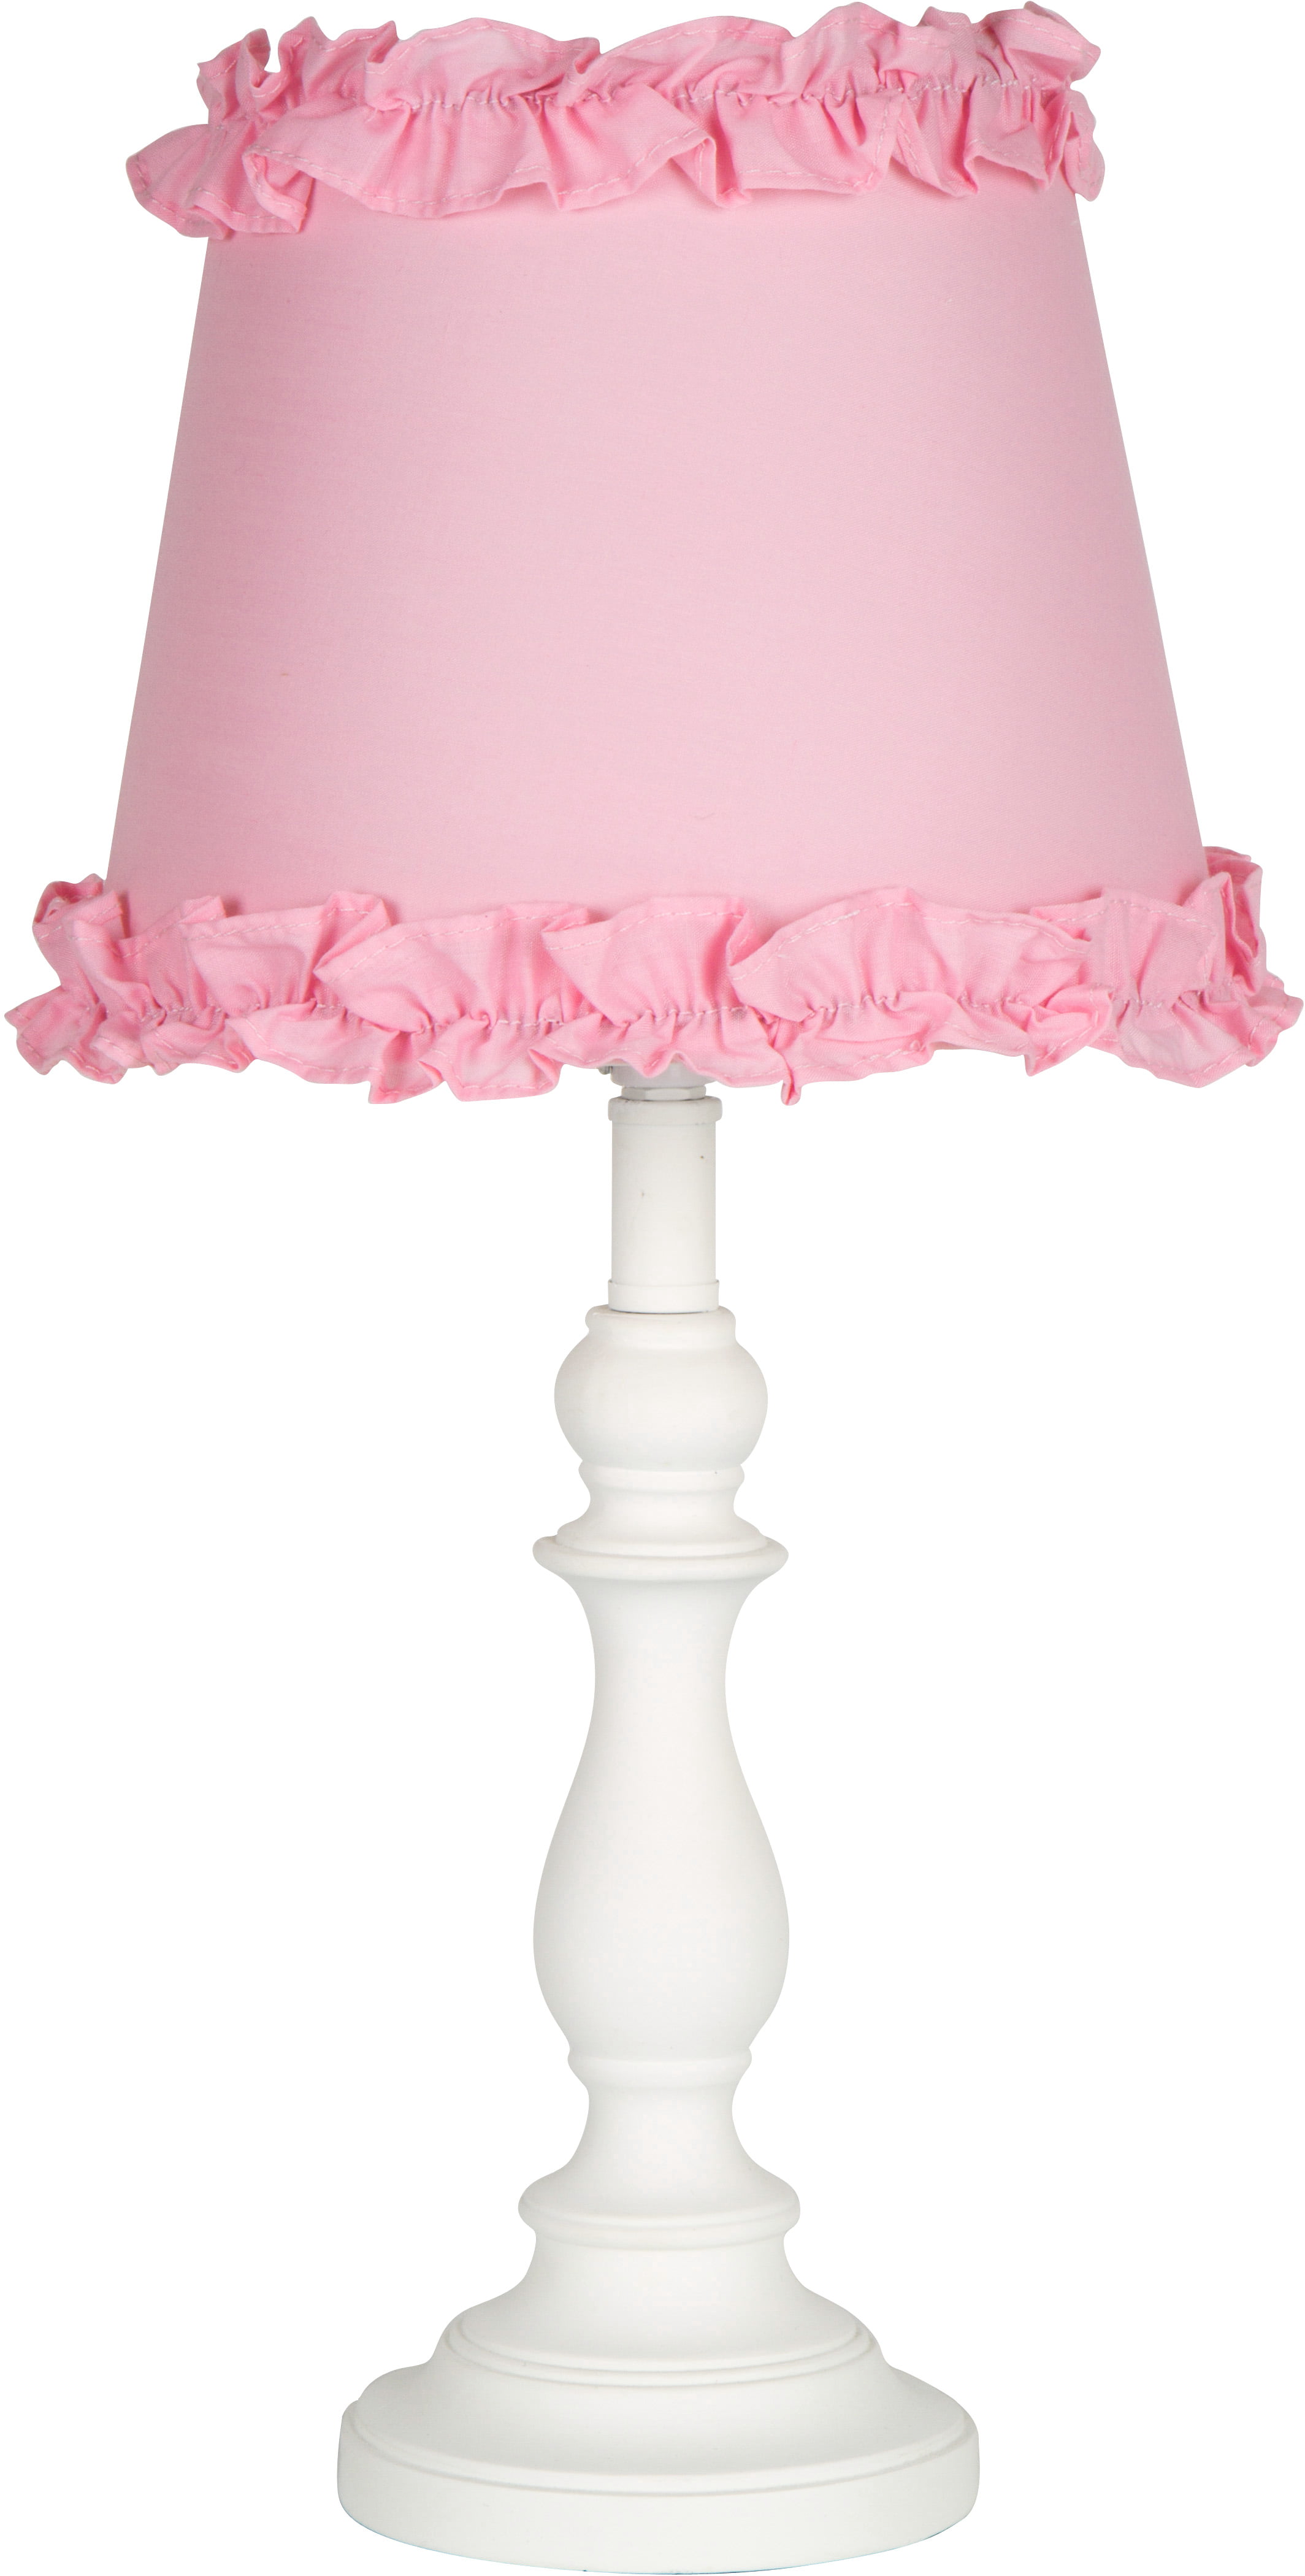 table lamp for little girl room